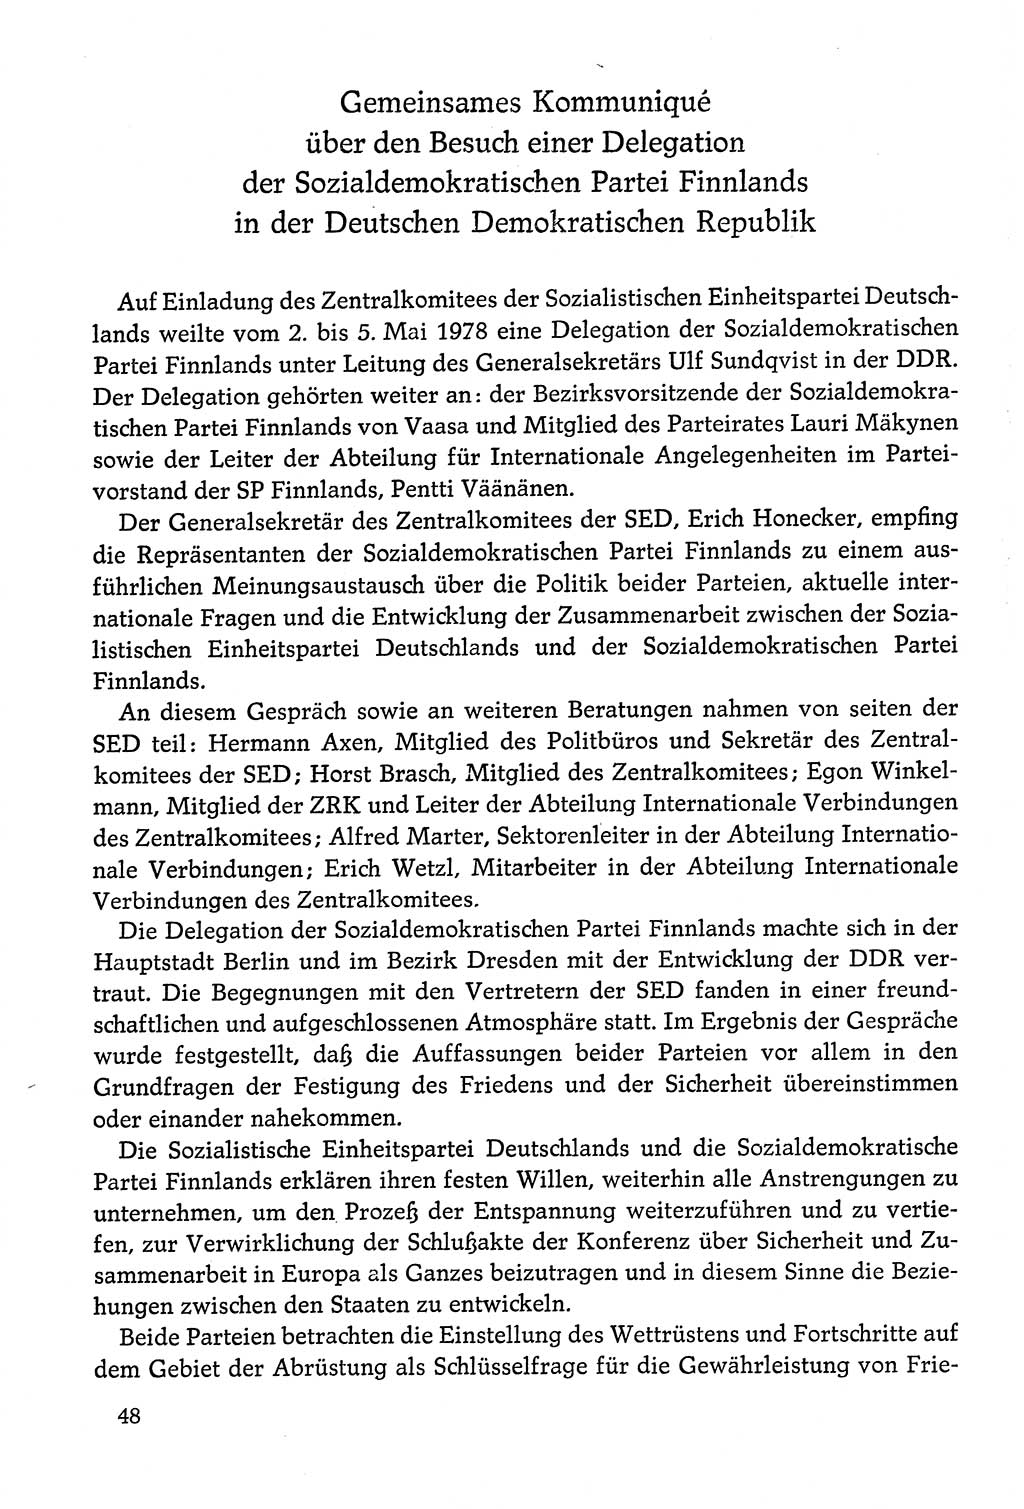 Dokumente der Sozialistischen Einheitspartei Deutschlands (SED) [Deutsche Demokratische Republik (DDR)] 1978-1979, Seite 48 (Dok. SED DDR 1978-1979, S. 48)